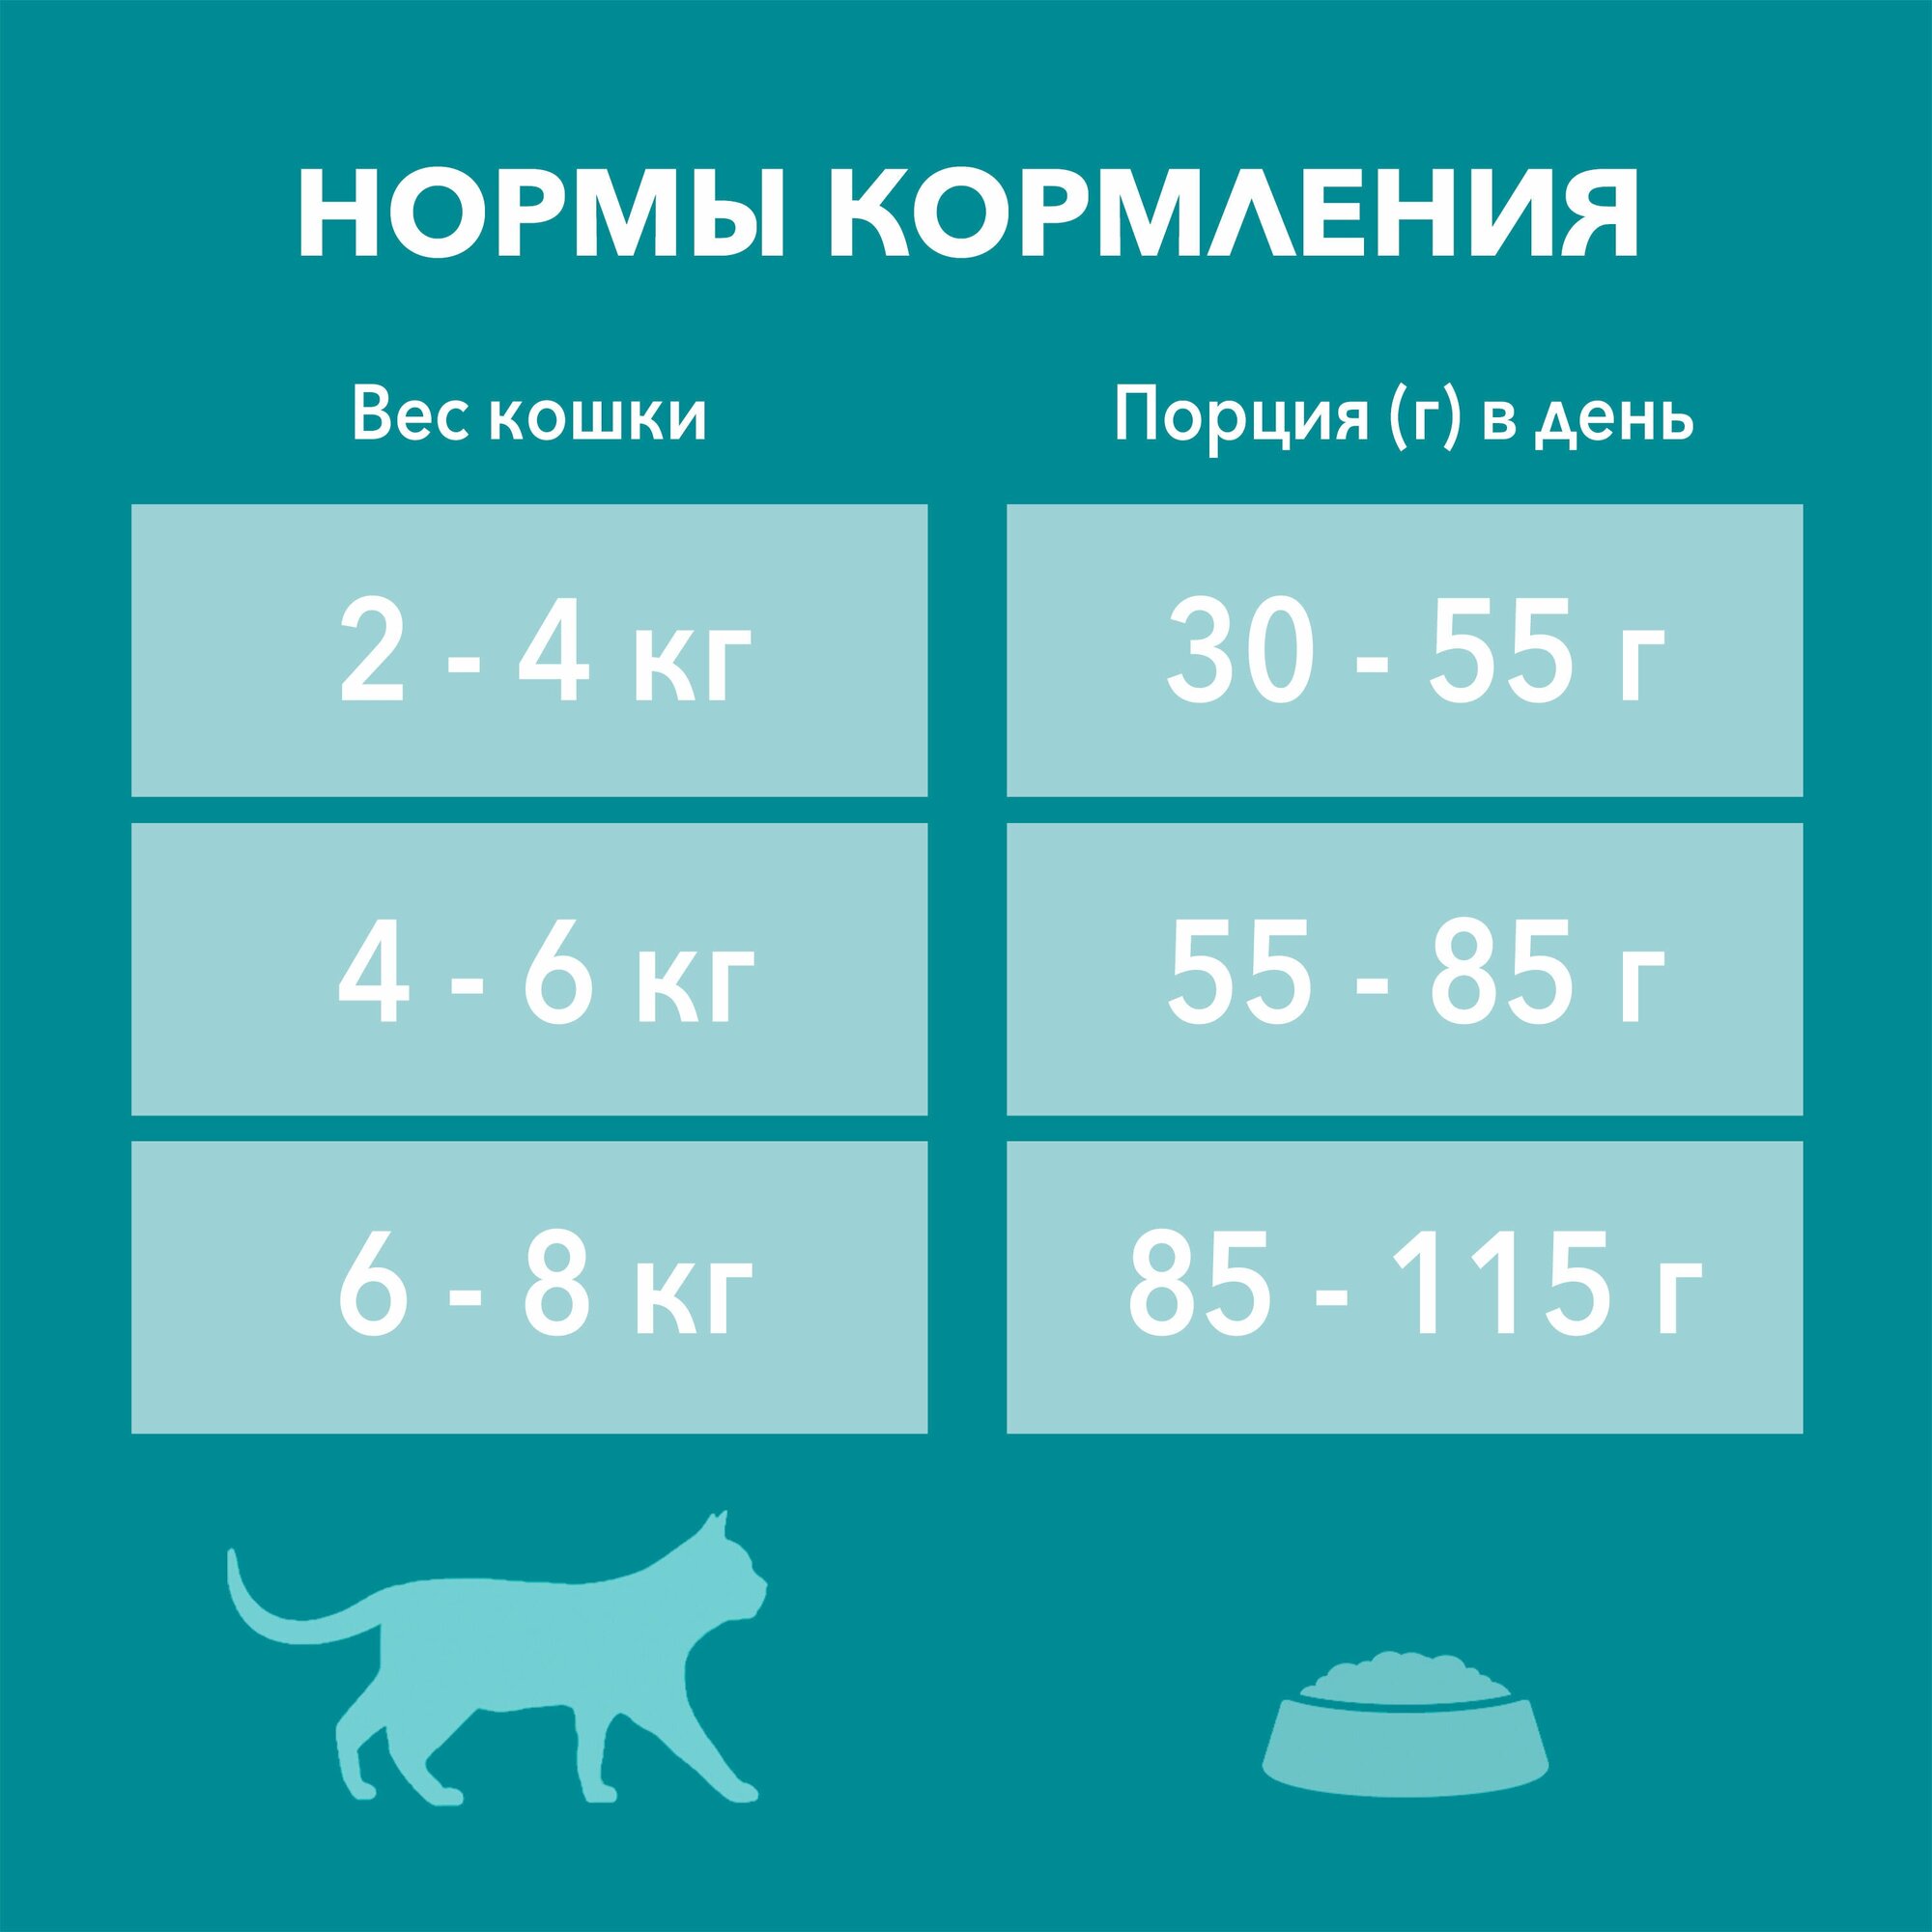 Корм сухой Purina One ® для домашних кошек с высоким содержанием индейки и цельными злаками 9,75 кг